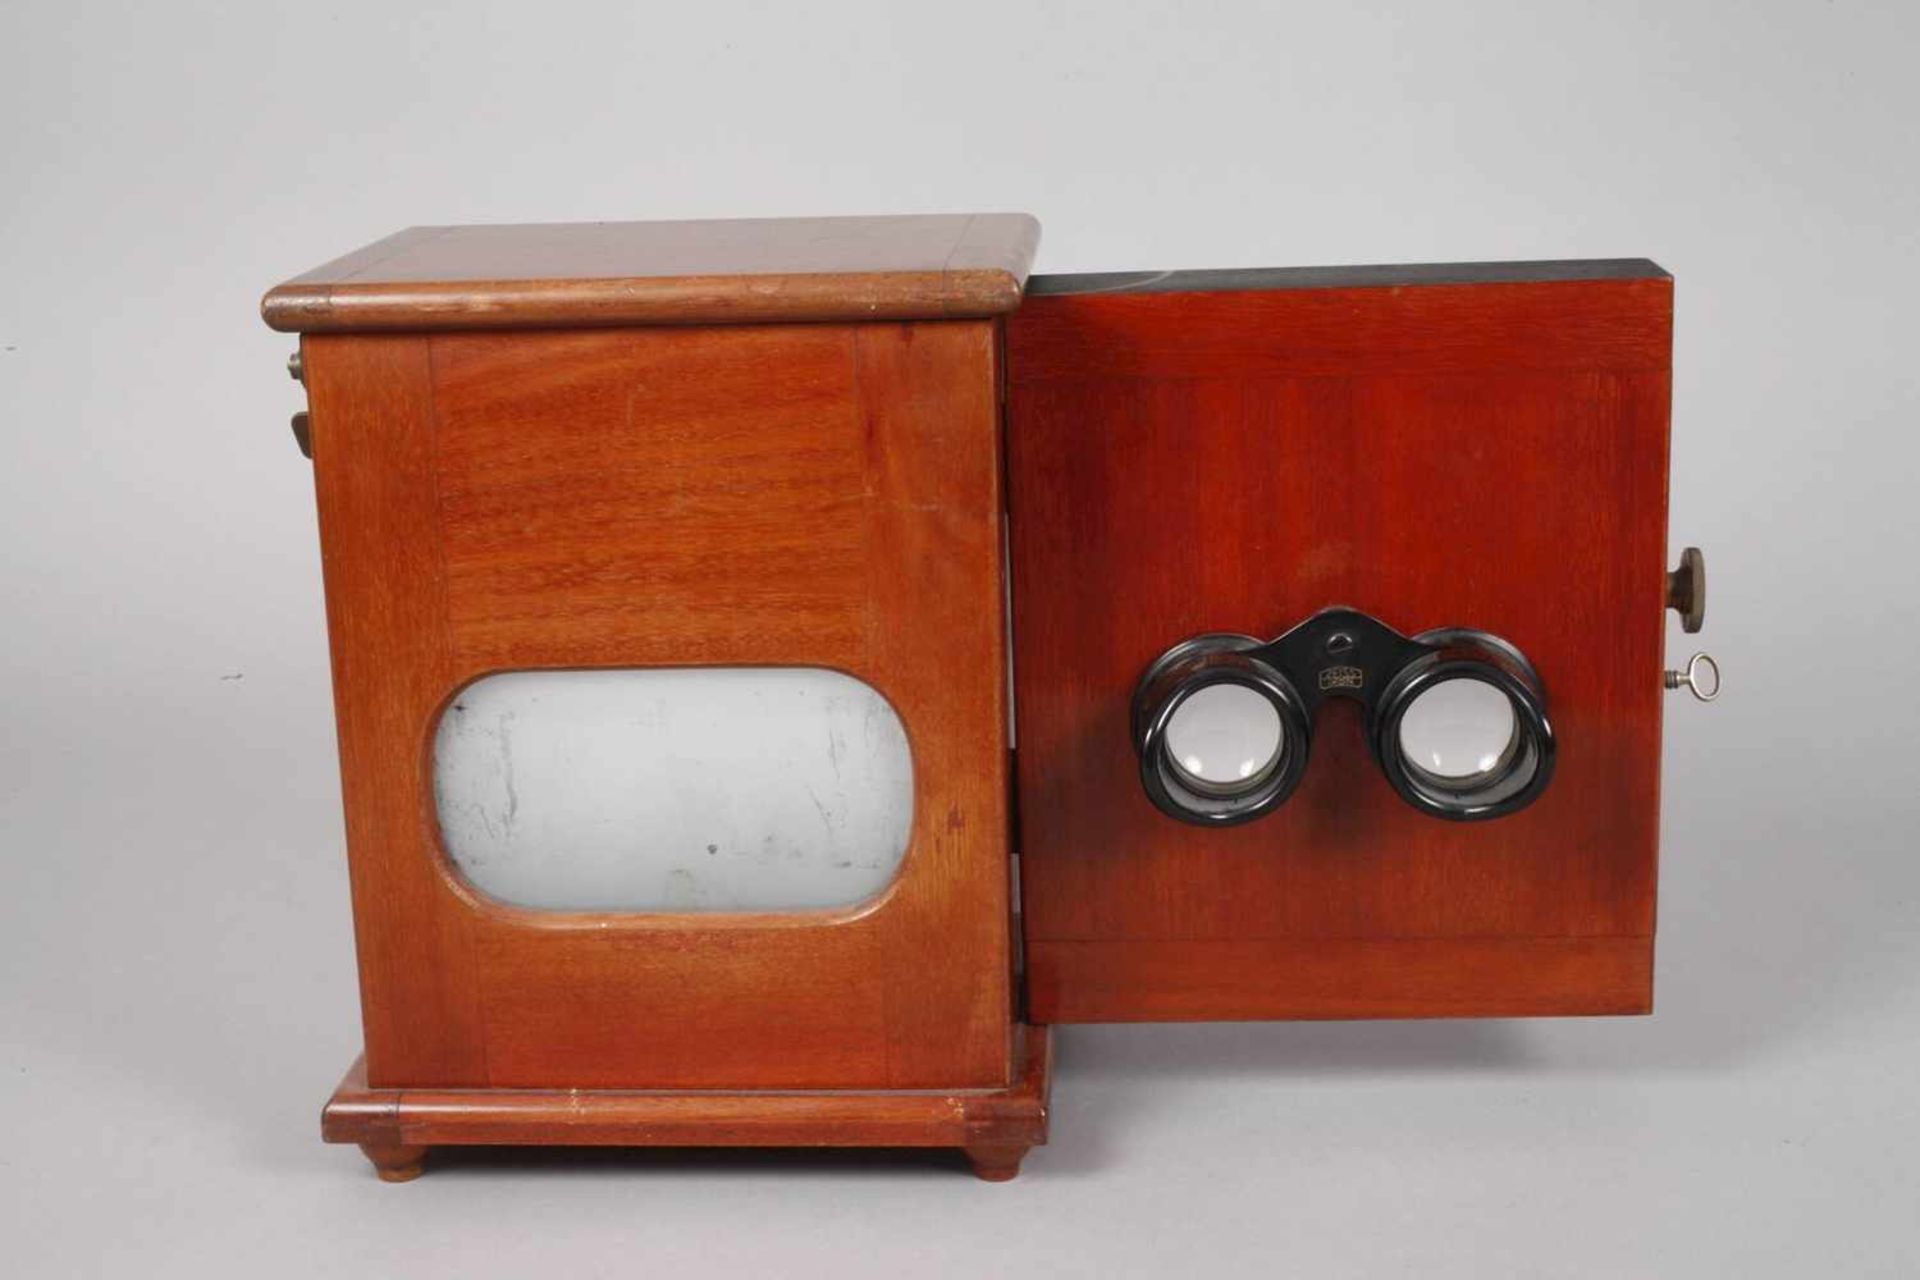 Stereobetrachter Carl Zeissum 1920, gemarkt Zeiss Ikon, Betrachter für Bilderkassetten, mit - Bild 3 aus 4